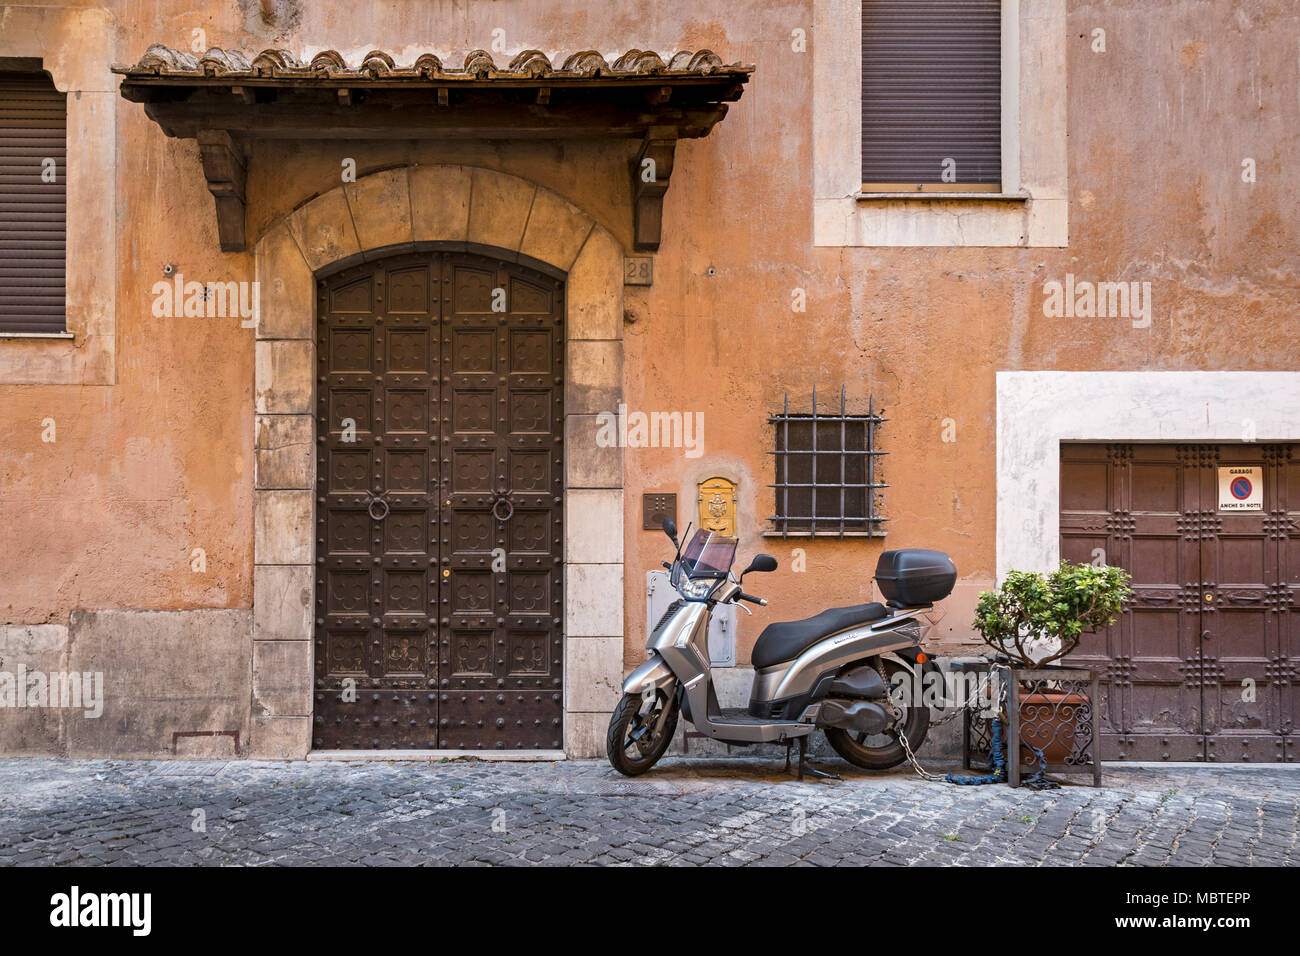 Ist die vordere Klappe groß oder das Garagentor klein? Eine Wohnstraße in Rom, Italien, die Fassade einer Villa mit verwitterten Fassade in den Farben Terra Stockfoto